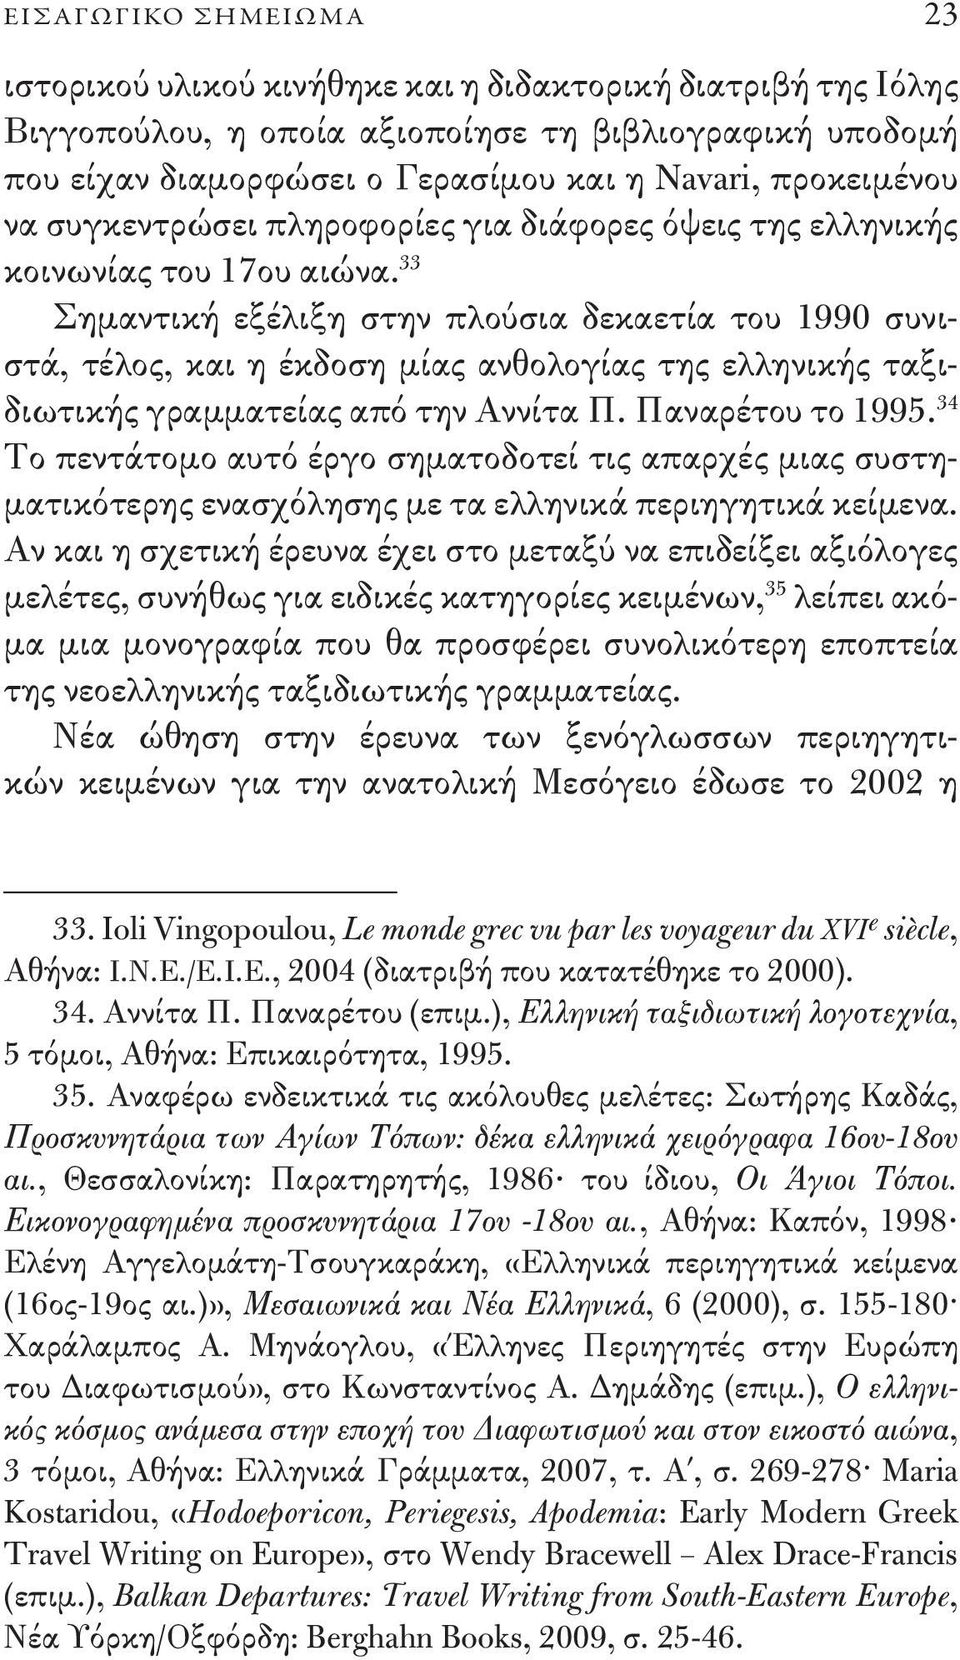 33 Σημαντική εξέλιξη στην πλούσια δεκαετία του 1990 συνιστά, τέλος, και η έκδοση μίας ανθολογίας της ελληνικής ταξιδιωτικής γραμματείας από την Αννίτα Π. Παναρέτου το 1995.